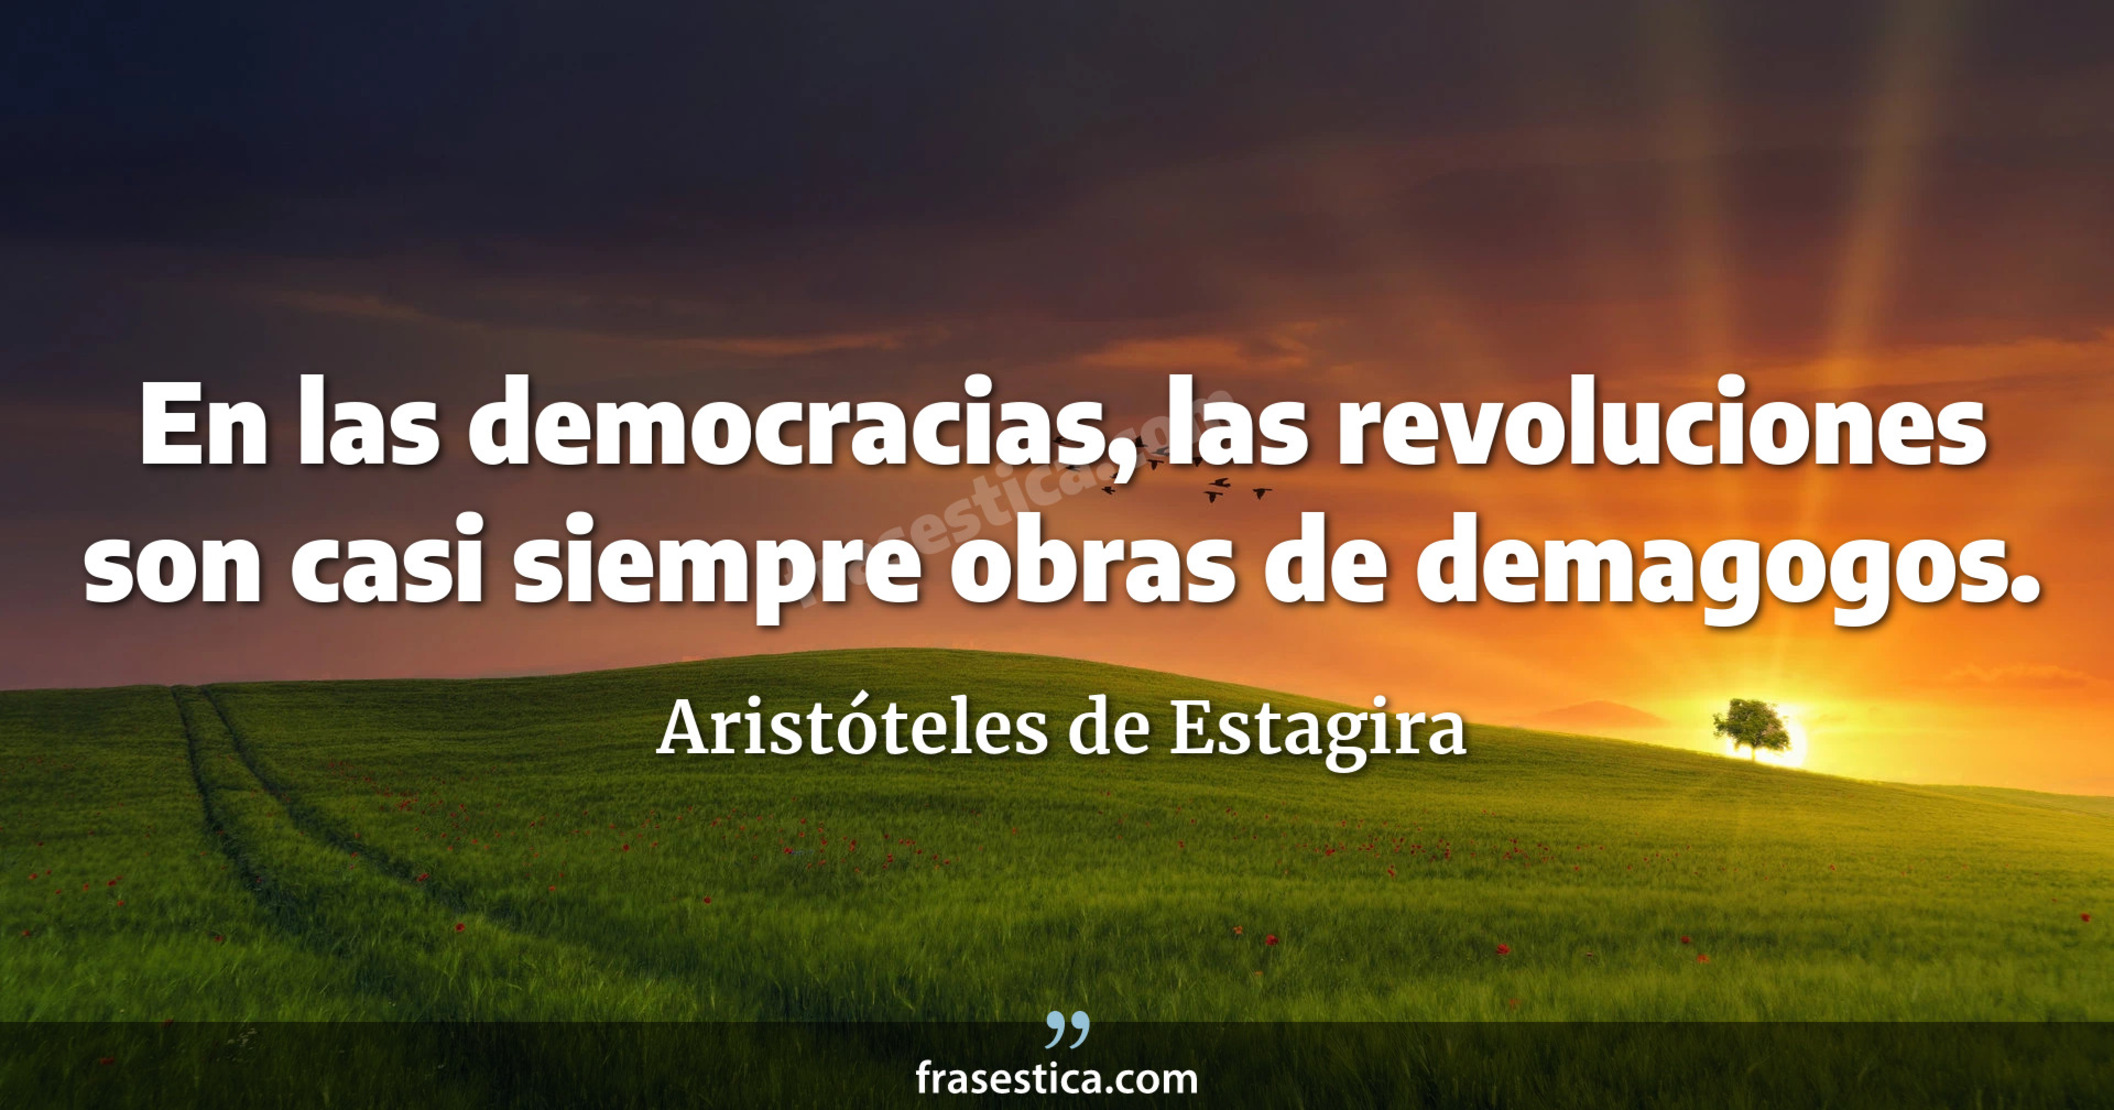 En las democracias, las revoluciones son casi siempre obras de demagogos. - Aristóteles de Estagira